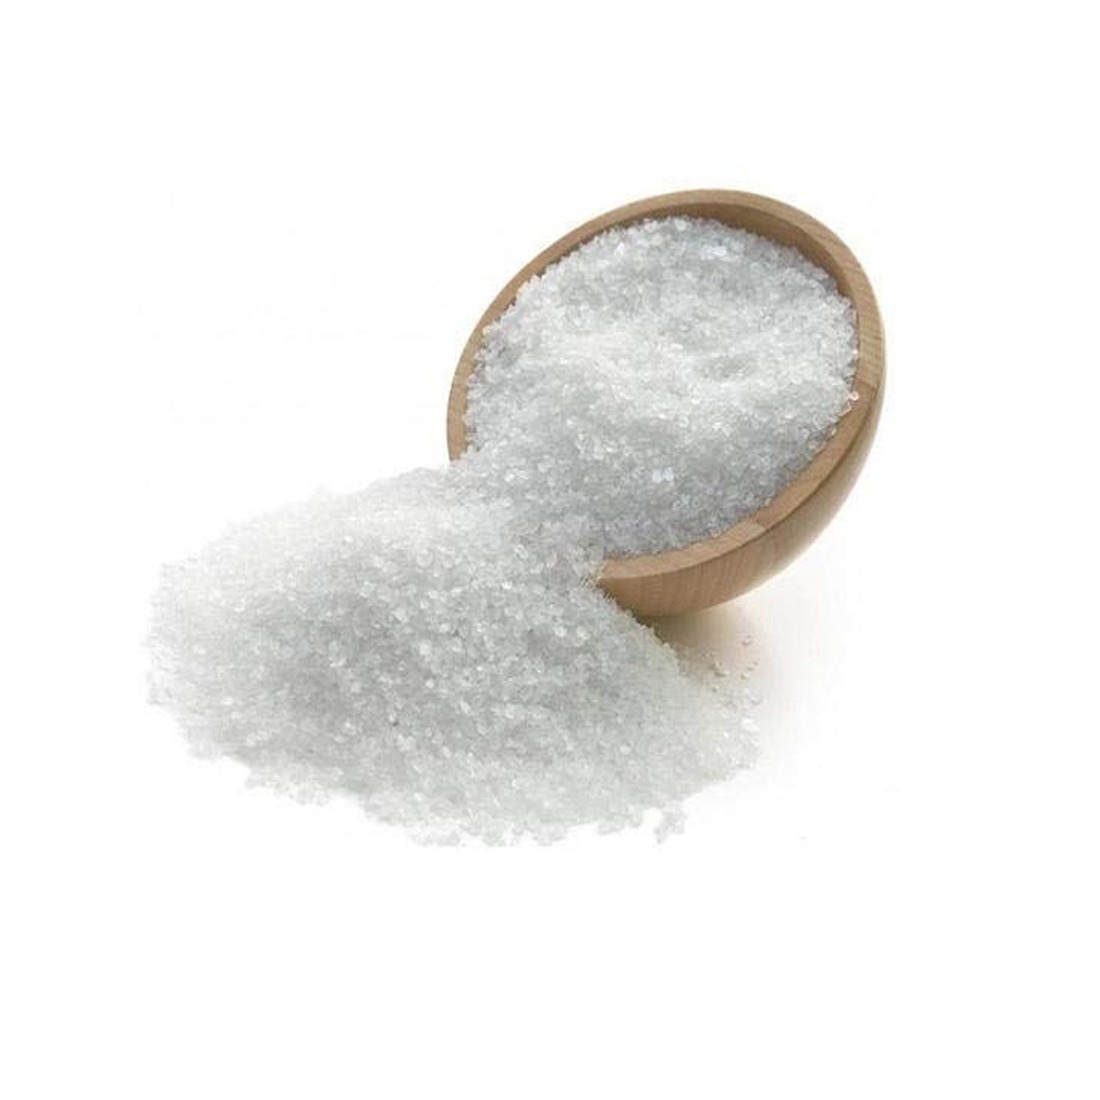 OEHB Epsom Salt Magnesium sulfate for Terrace Garden 1800 gm